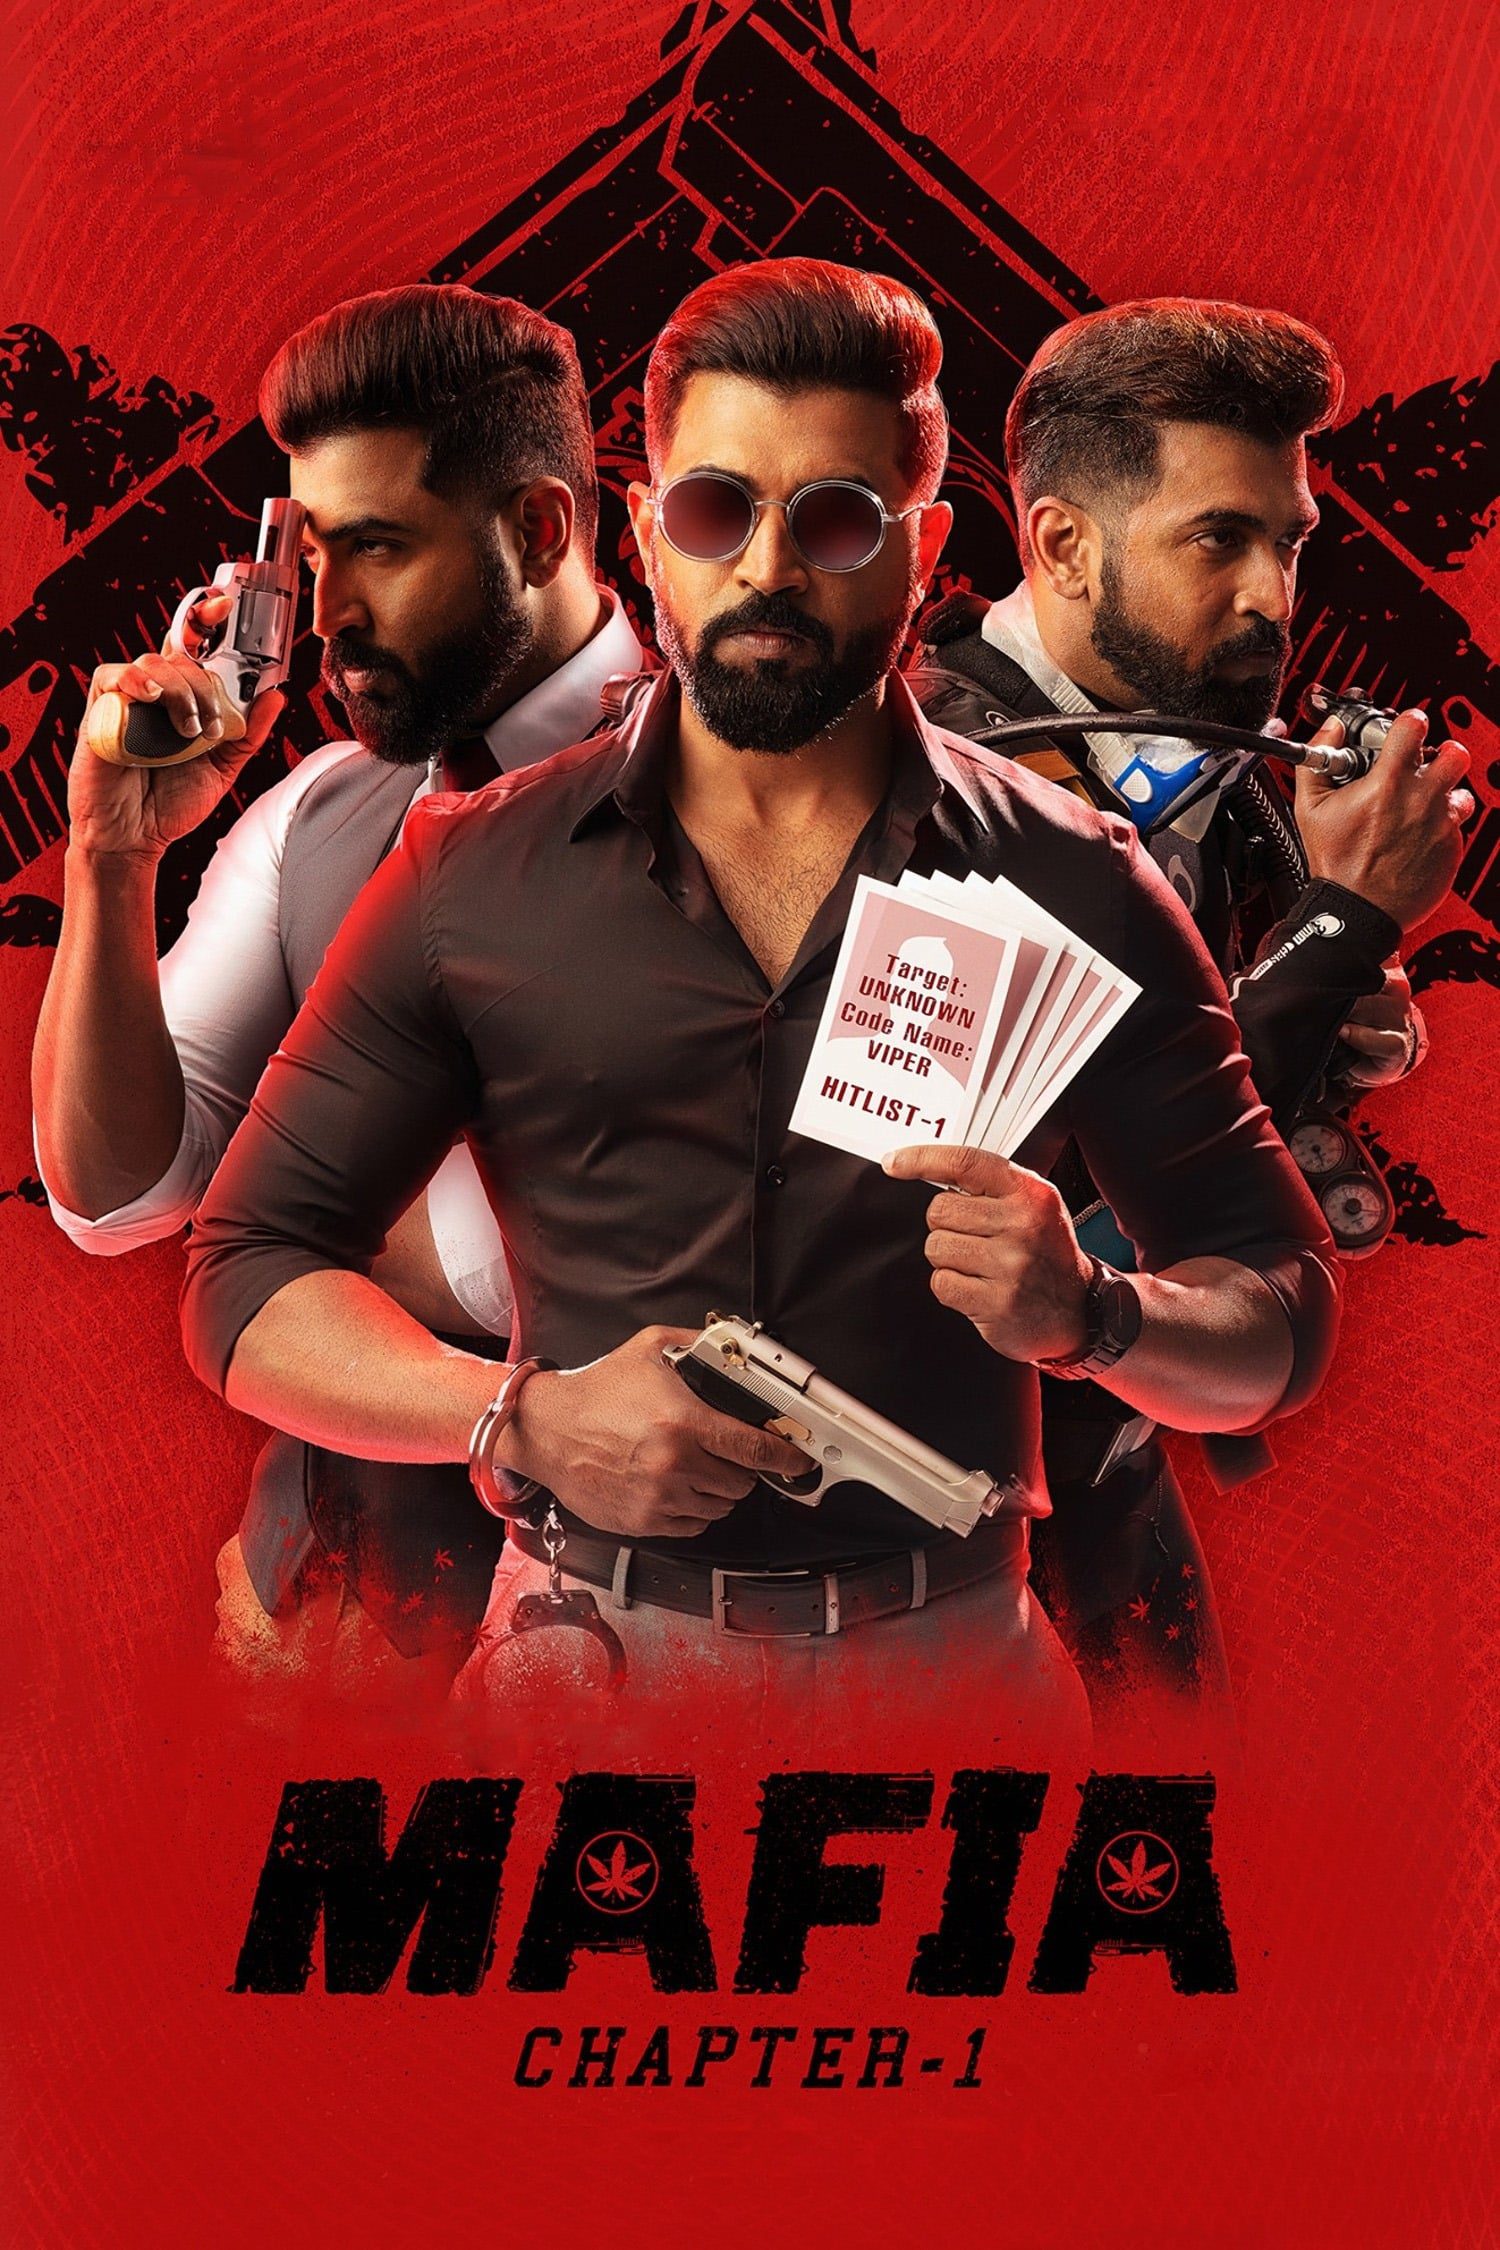 Poster for the movie "Mafia"